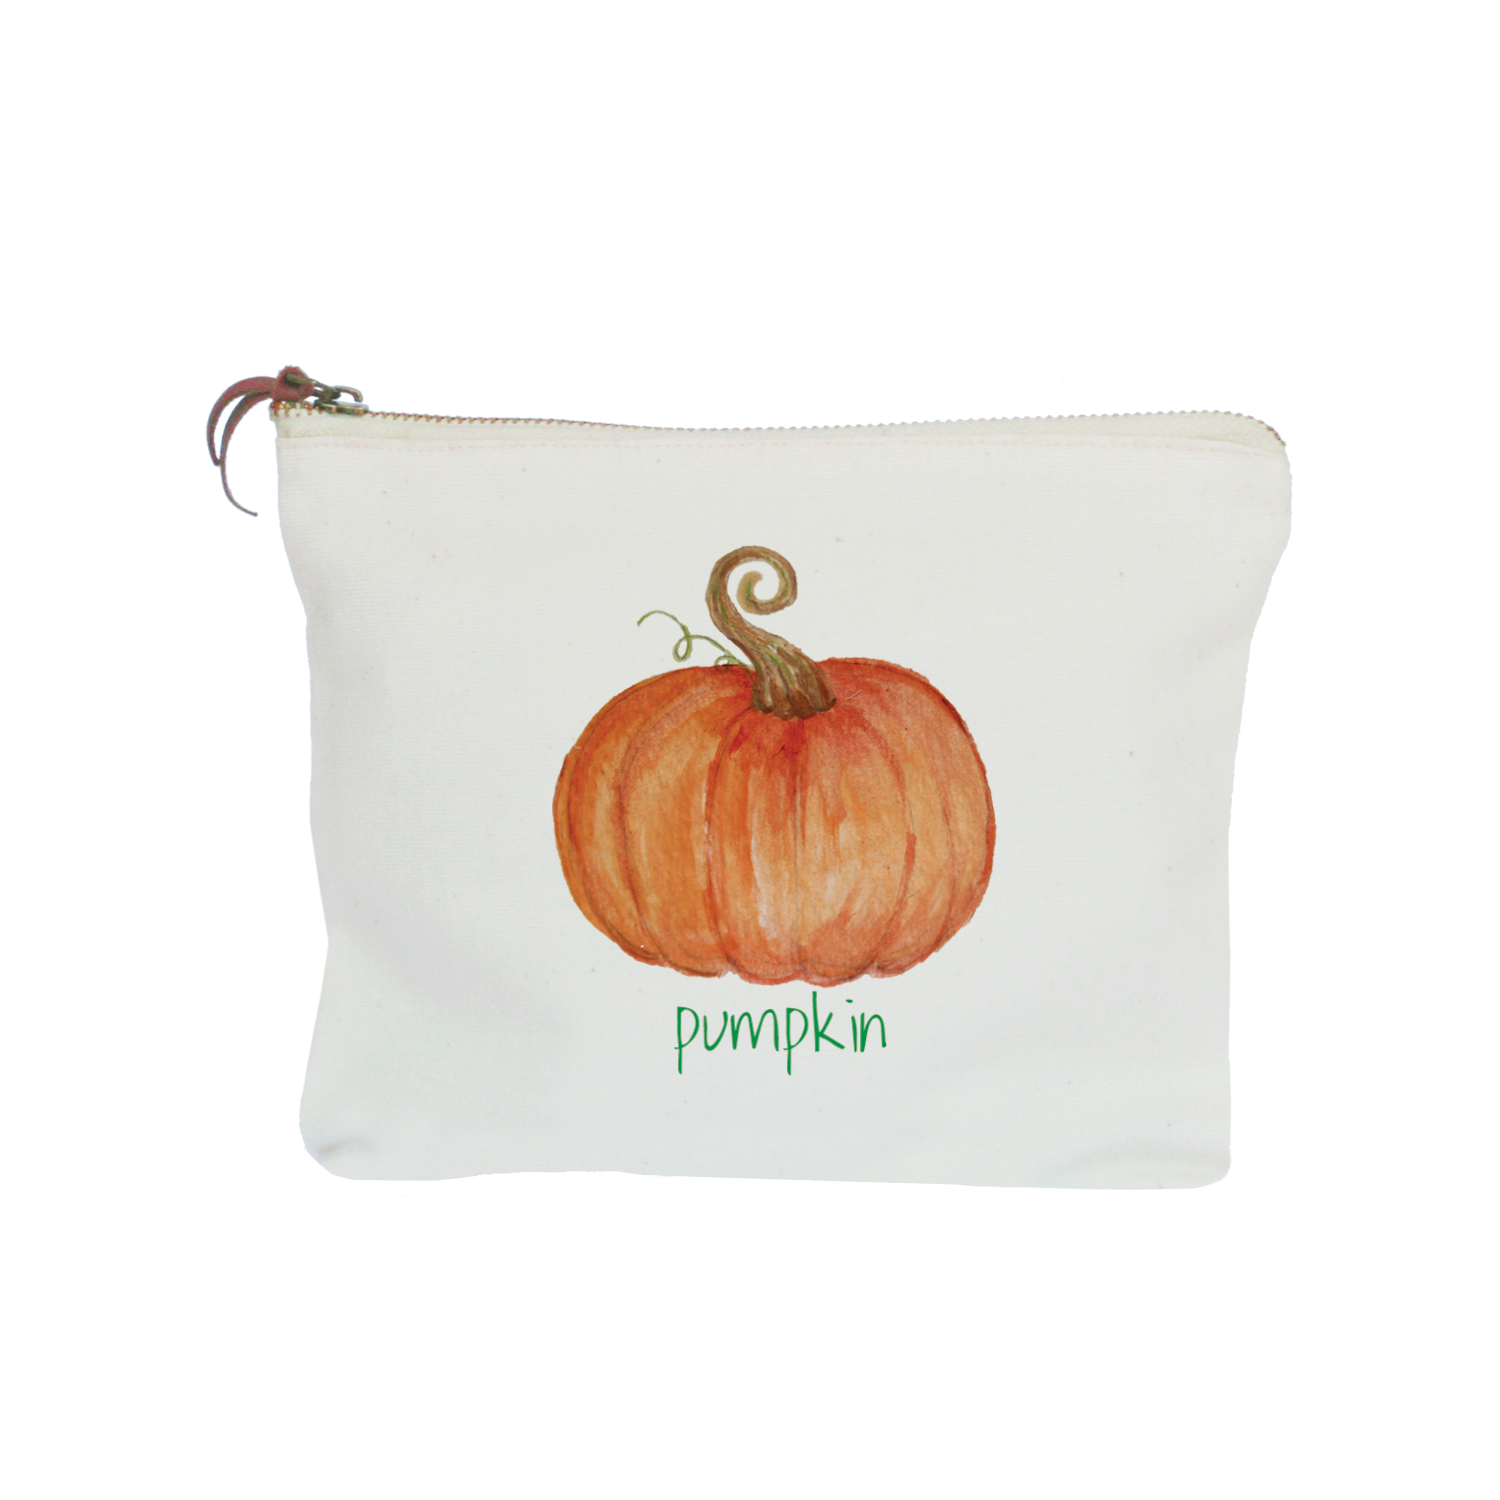 Pumpkin with pumpkin text zipper pouch